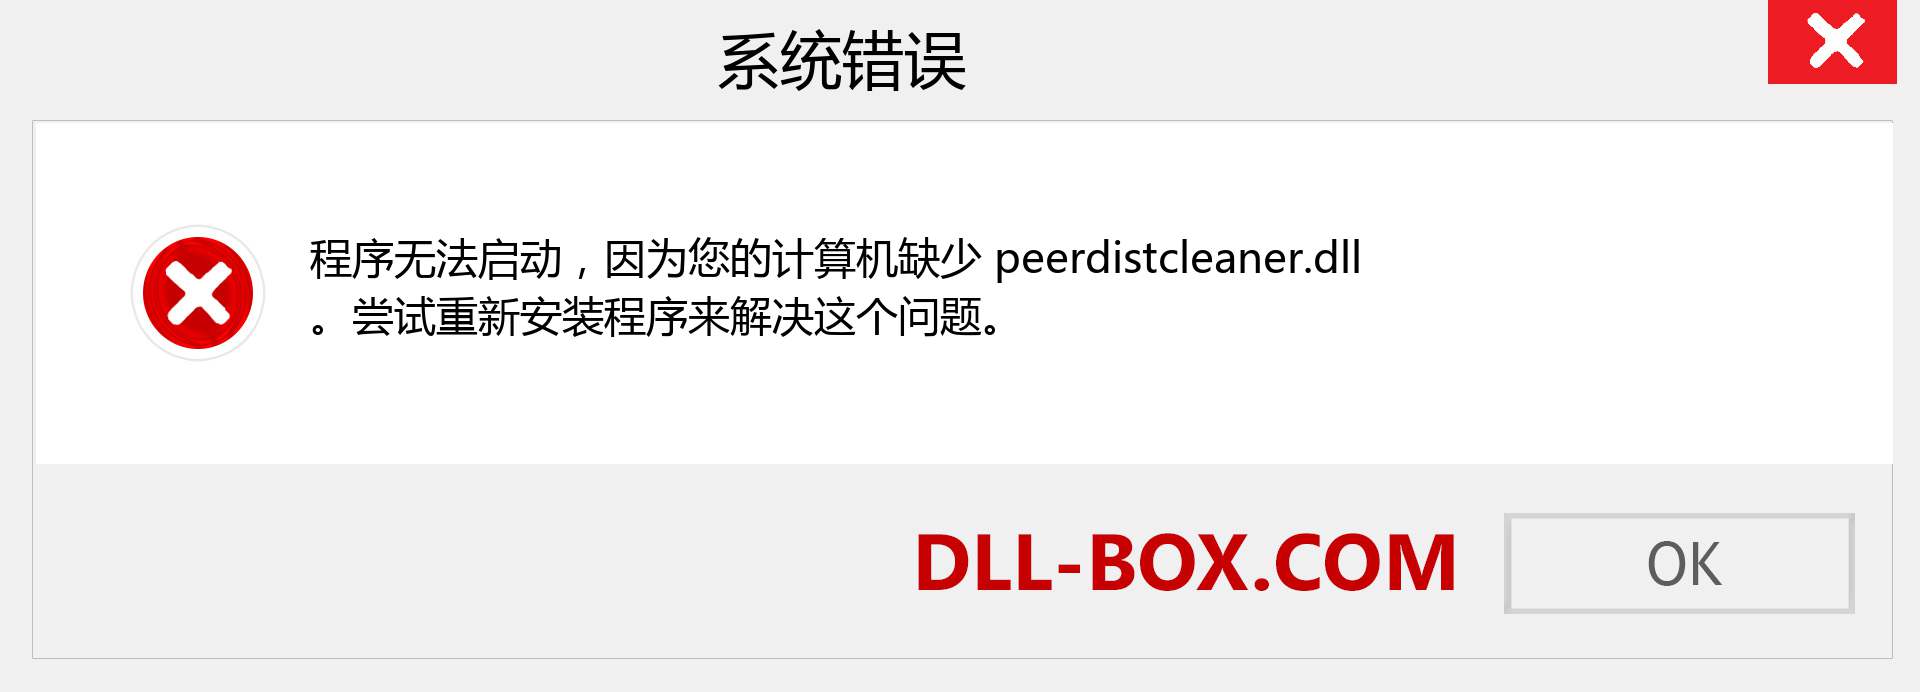 peerdistcleaner.dll 文件丢失？。 适用于 Windows 7、8、10 的下载 - 修复 Windows、照片、图像上的 peerdistcleaner dll 丢失错误